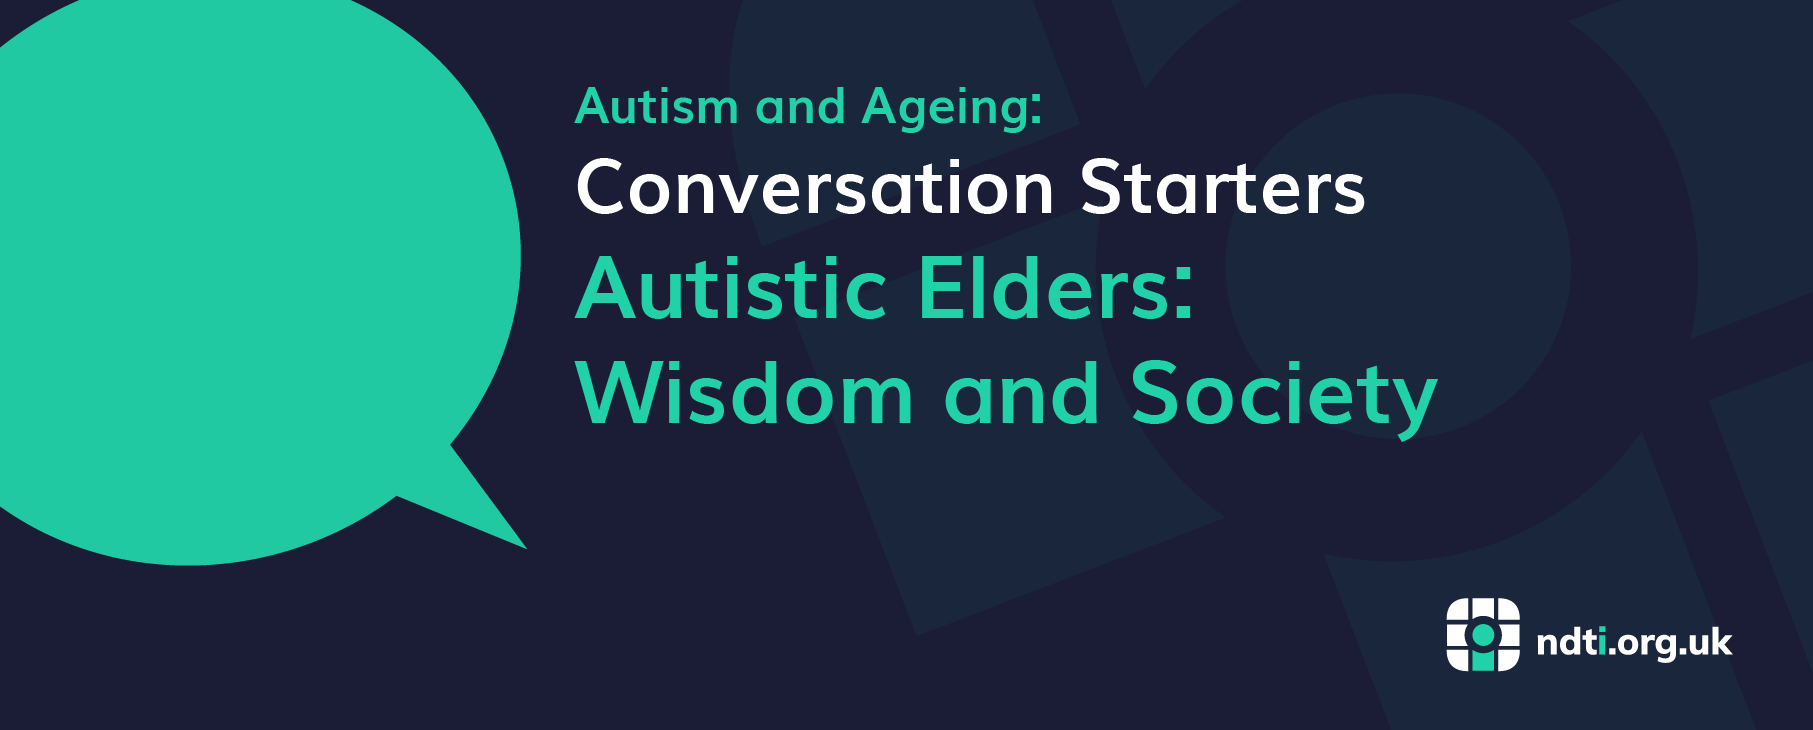 Autistic Elders Wisdom and Society 01